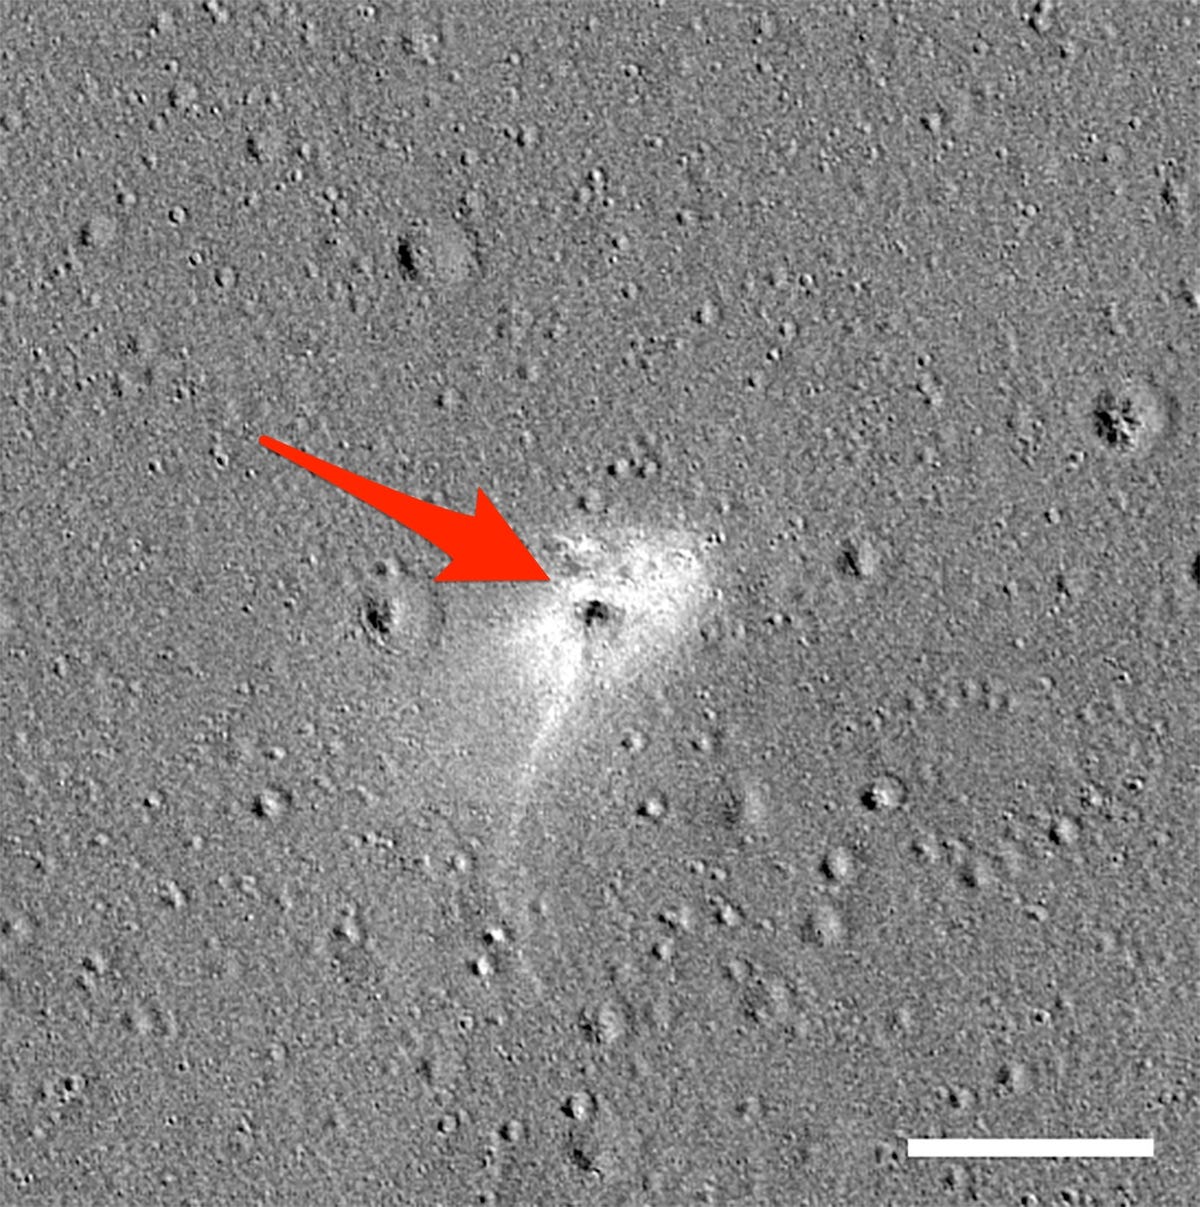 Israel Beresheet Privater Mondlander-Absturzort NASA Lunar Reconnaissance Orbiter LRO beschriftet